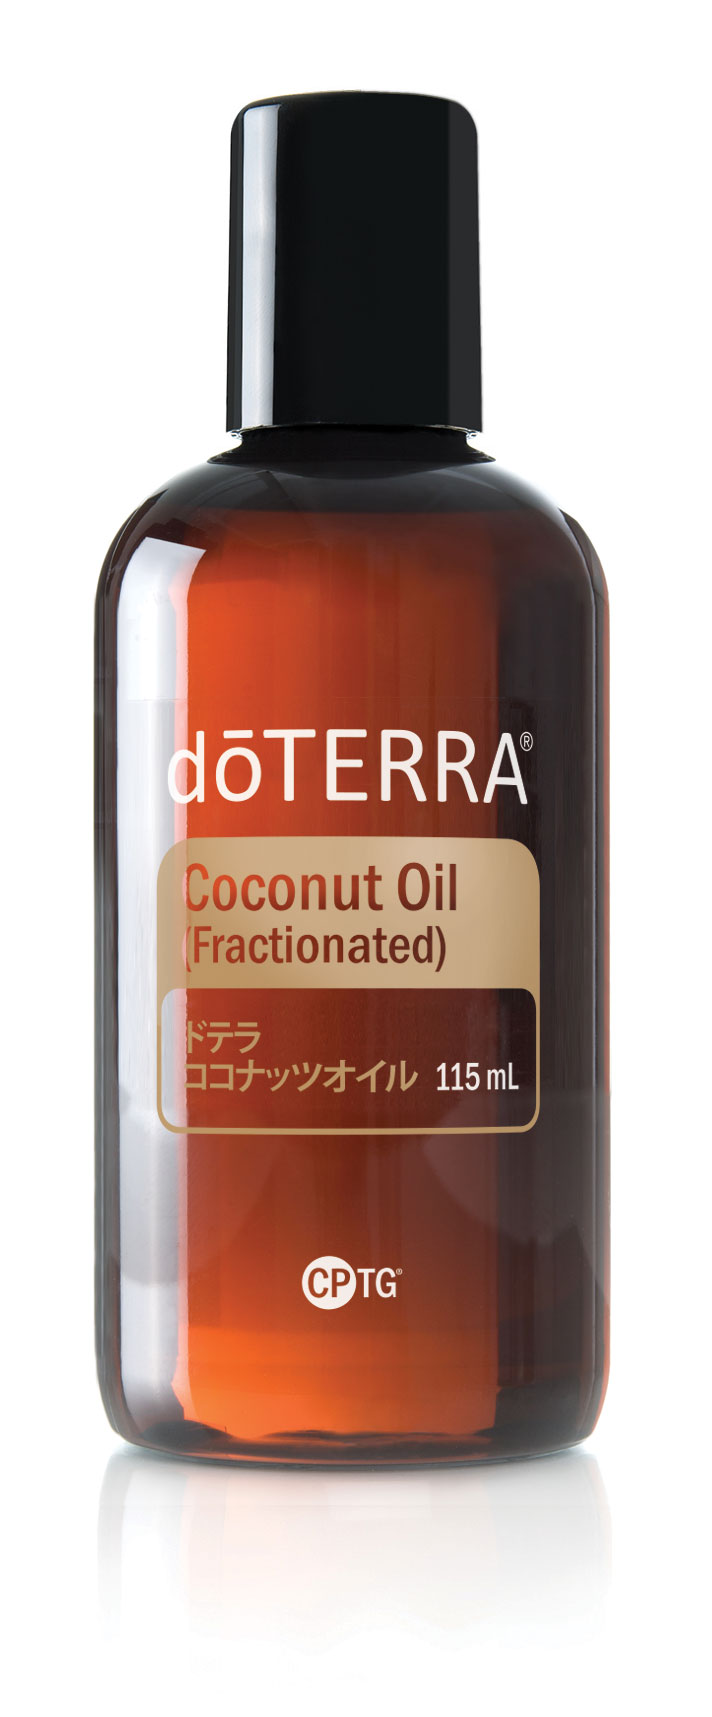 ドテラ ココナッツオイル | Fractionated Coconut Oil | doTERRA Essential Oils